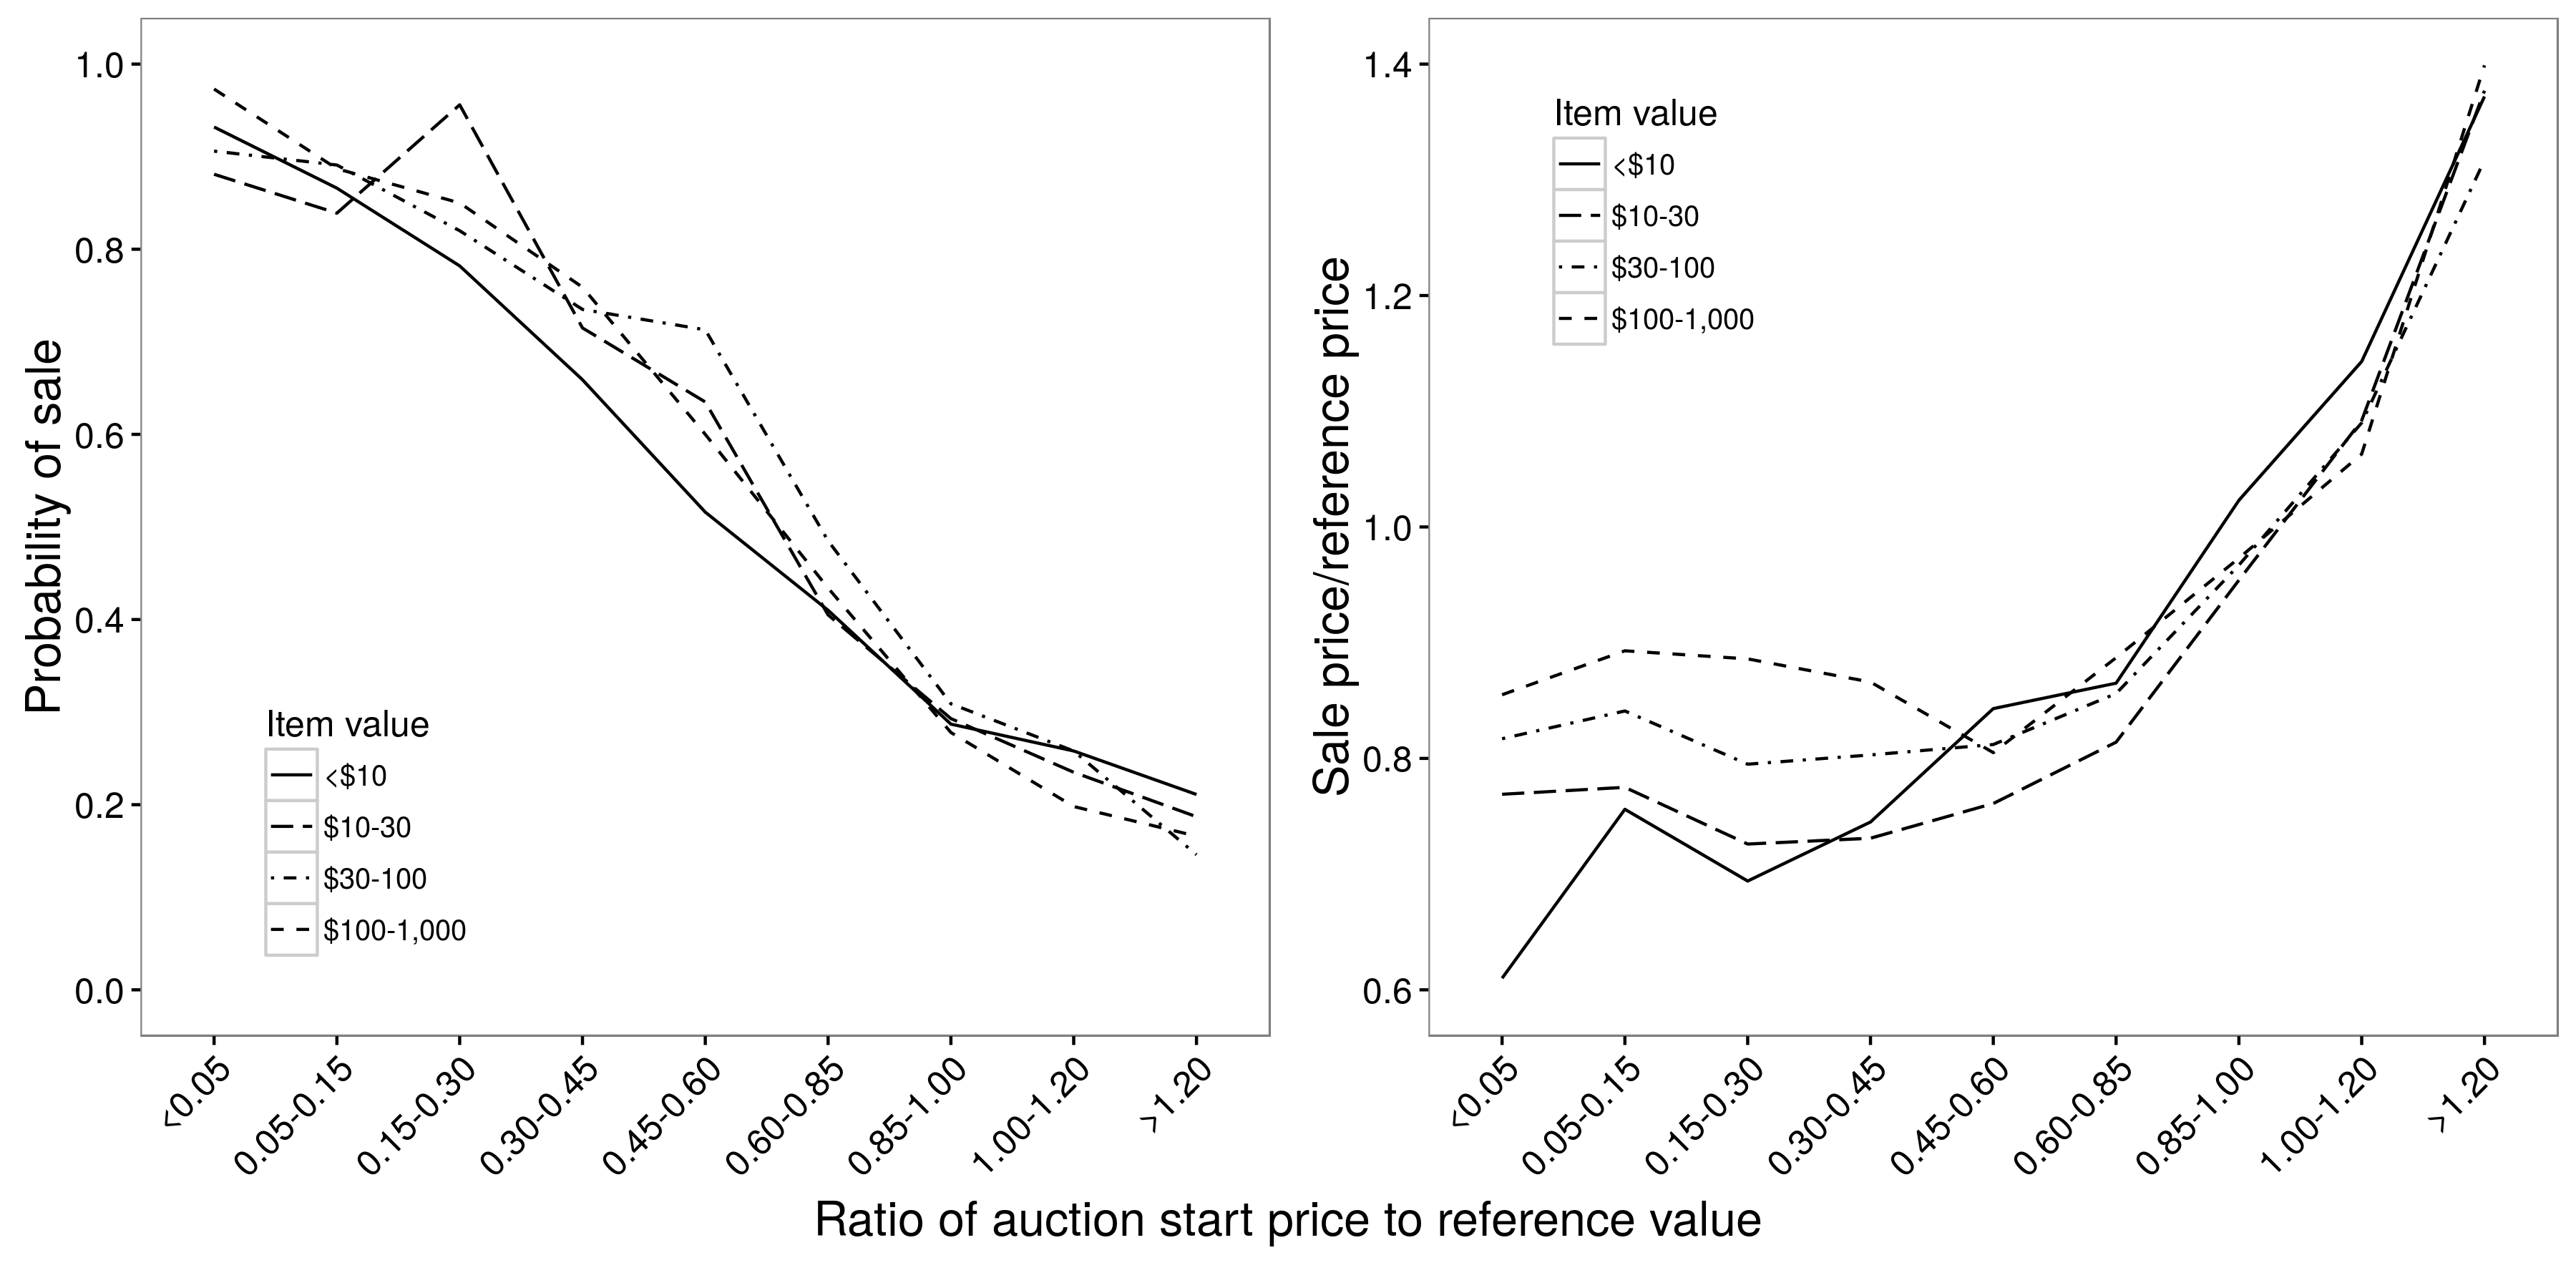 Abbildung 2.9: Verhältnis zwischen Auktionspreis und Verkaufswahrscheinlichkeit (a) und Verkaufspreis (b). Es besteht in etwa eine lineare Beziehung zwischen dem Startpreis und der Verkaufswahrscheinlichkeit, aber eine nicht lineare Beziehung zwischen dem Startpreis und dem Verkaufspreis; bei Startpreisen zwischen 0,05 und 0,85 hat der Startpreis nur sehr geringe Auswirkungen auf den Verkaufspreis. In beiden Fällen sind die Beziehungen grundsätzlich unabhängig vom Wert des Elements. Nach Einav et al. (2015), Abbildungen 4a und 4b.